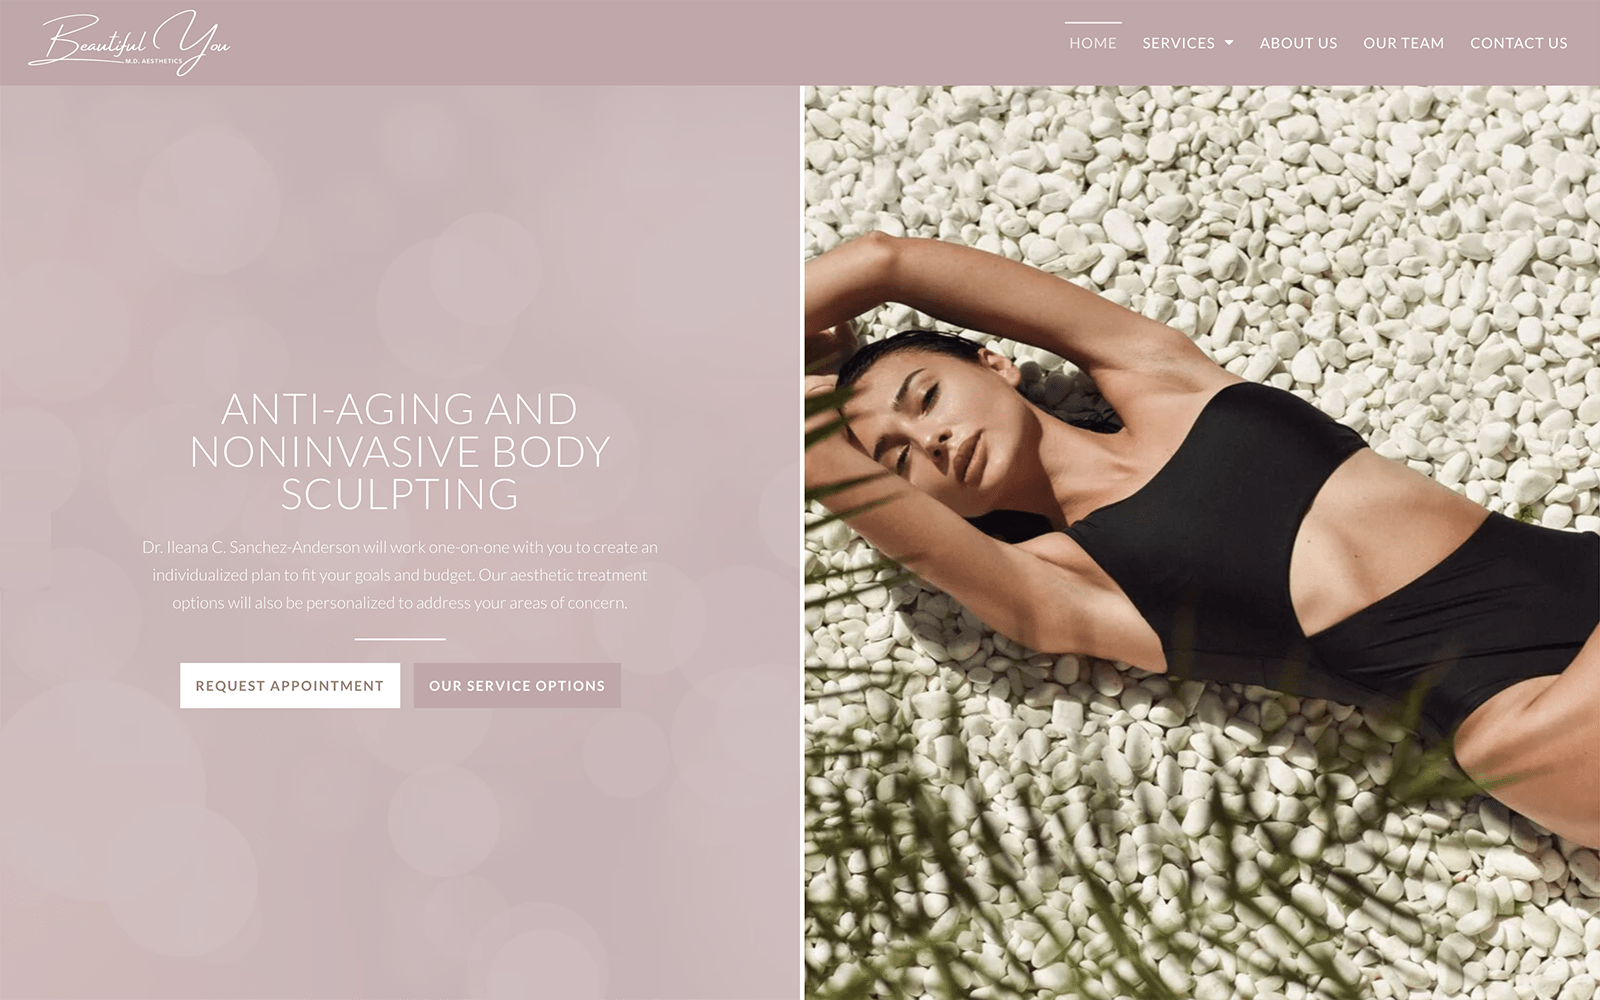 Mauve Cosmetic Website with Woman in Bikini